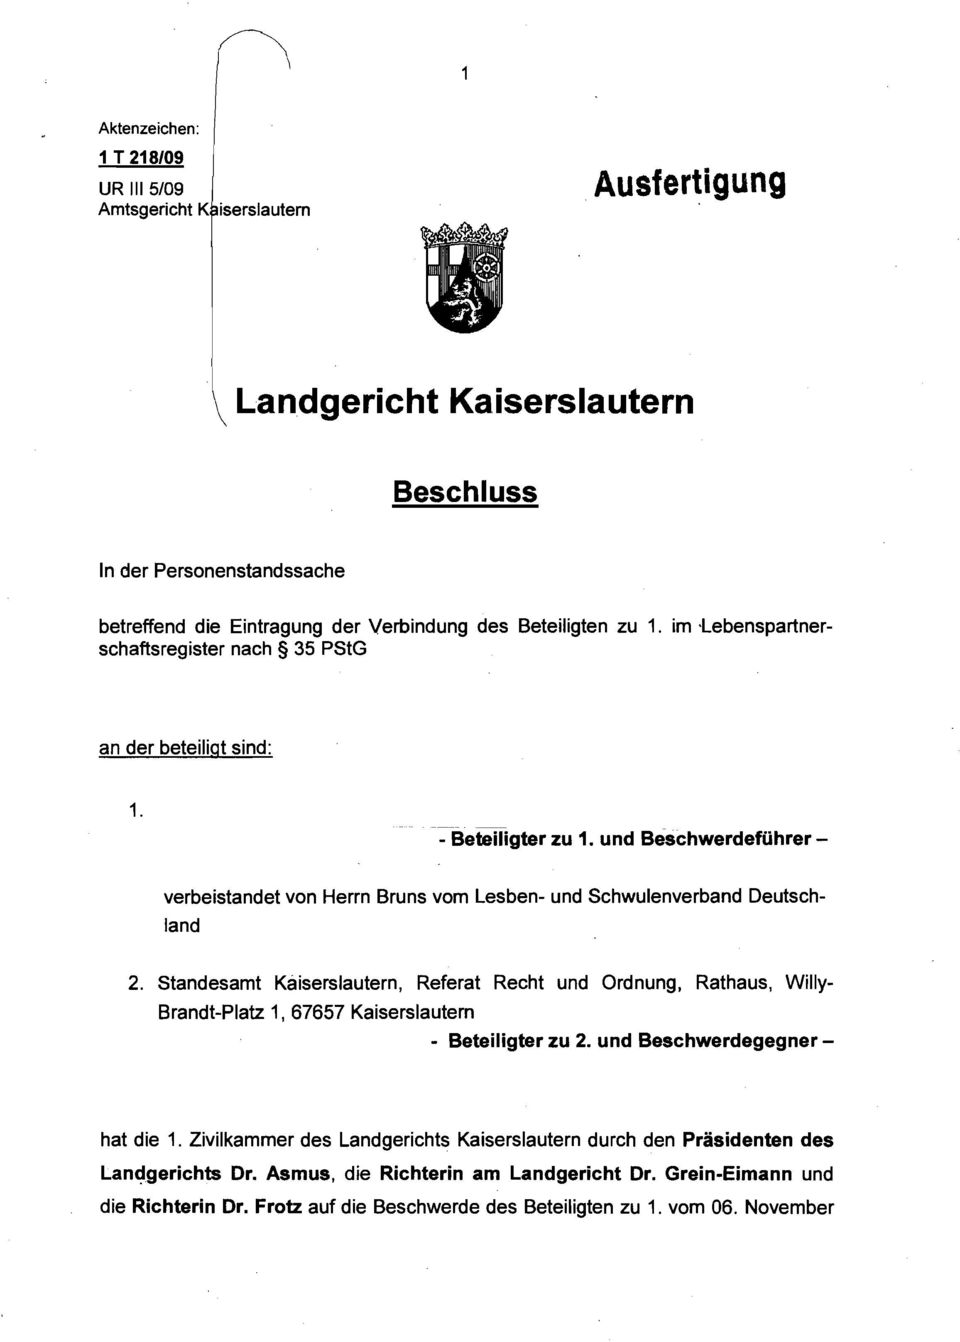 - Beteiligter zu 1. und Beschwerdeführerverbeistandet von Herrn Bruns vom Lesben- und Schwulenverband Deutschland 2.